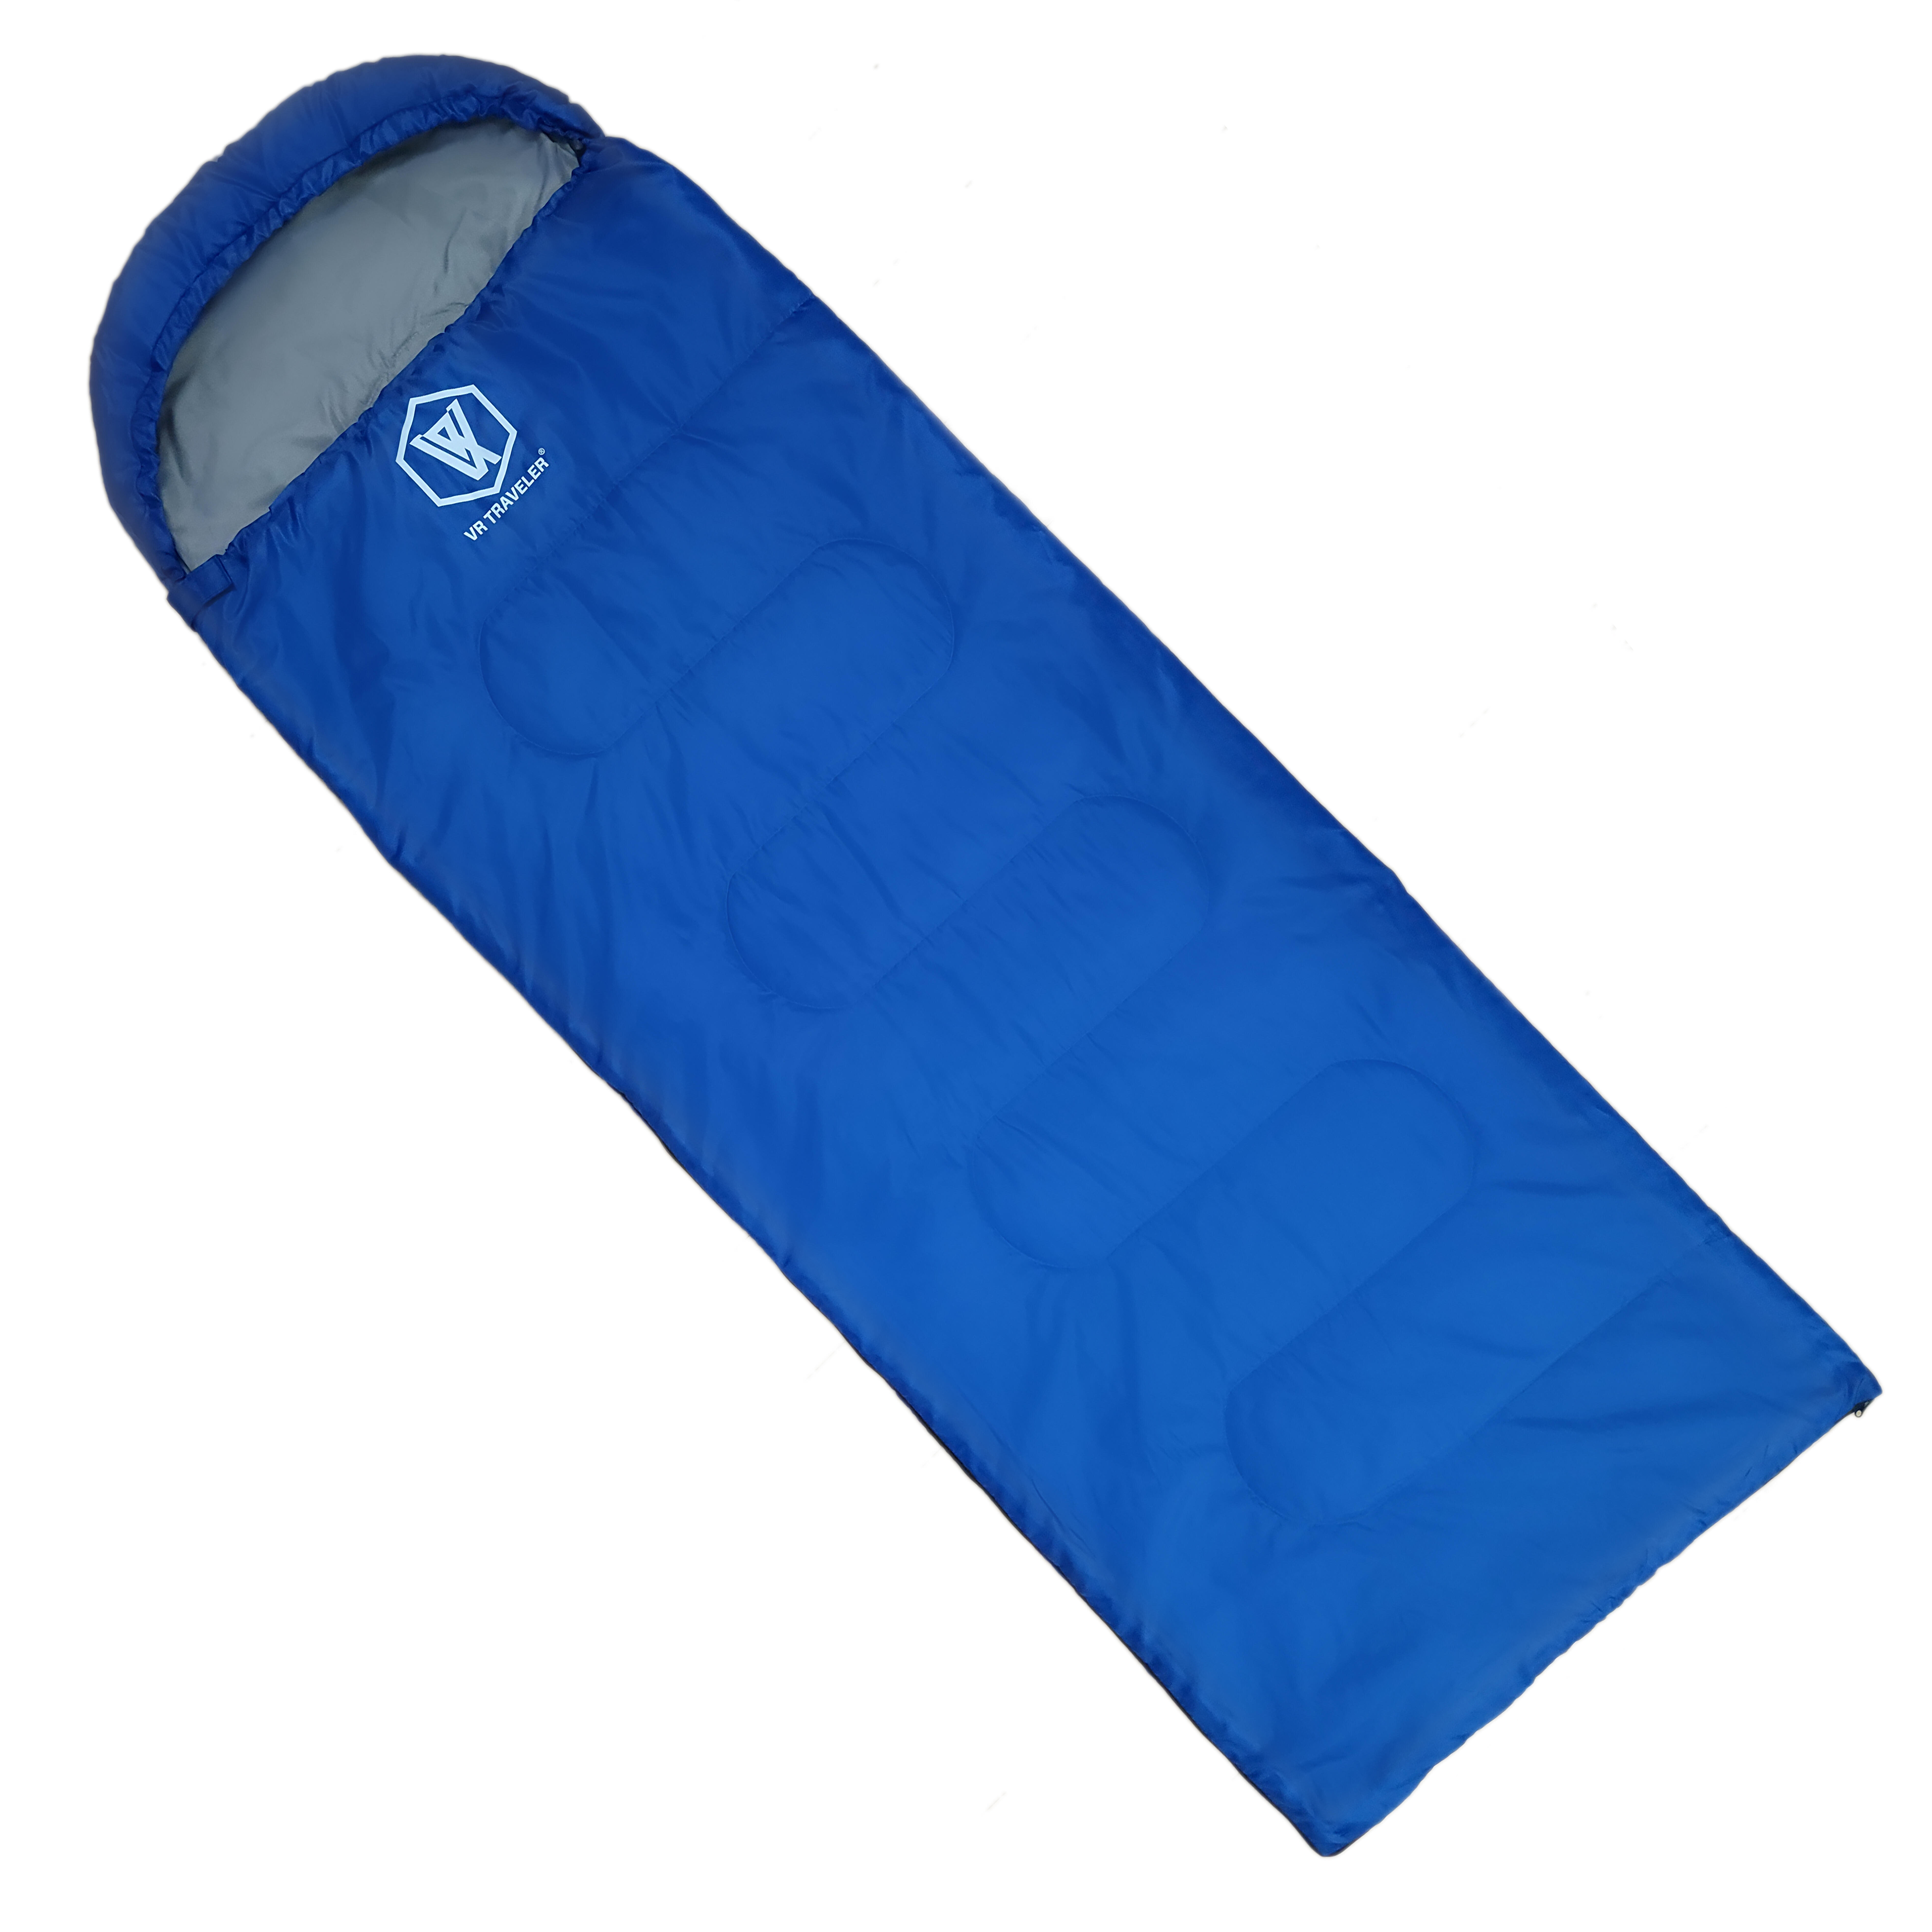 Sleeping Bags | Down Sleeping Bag | Blankets - Decathlon HK